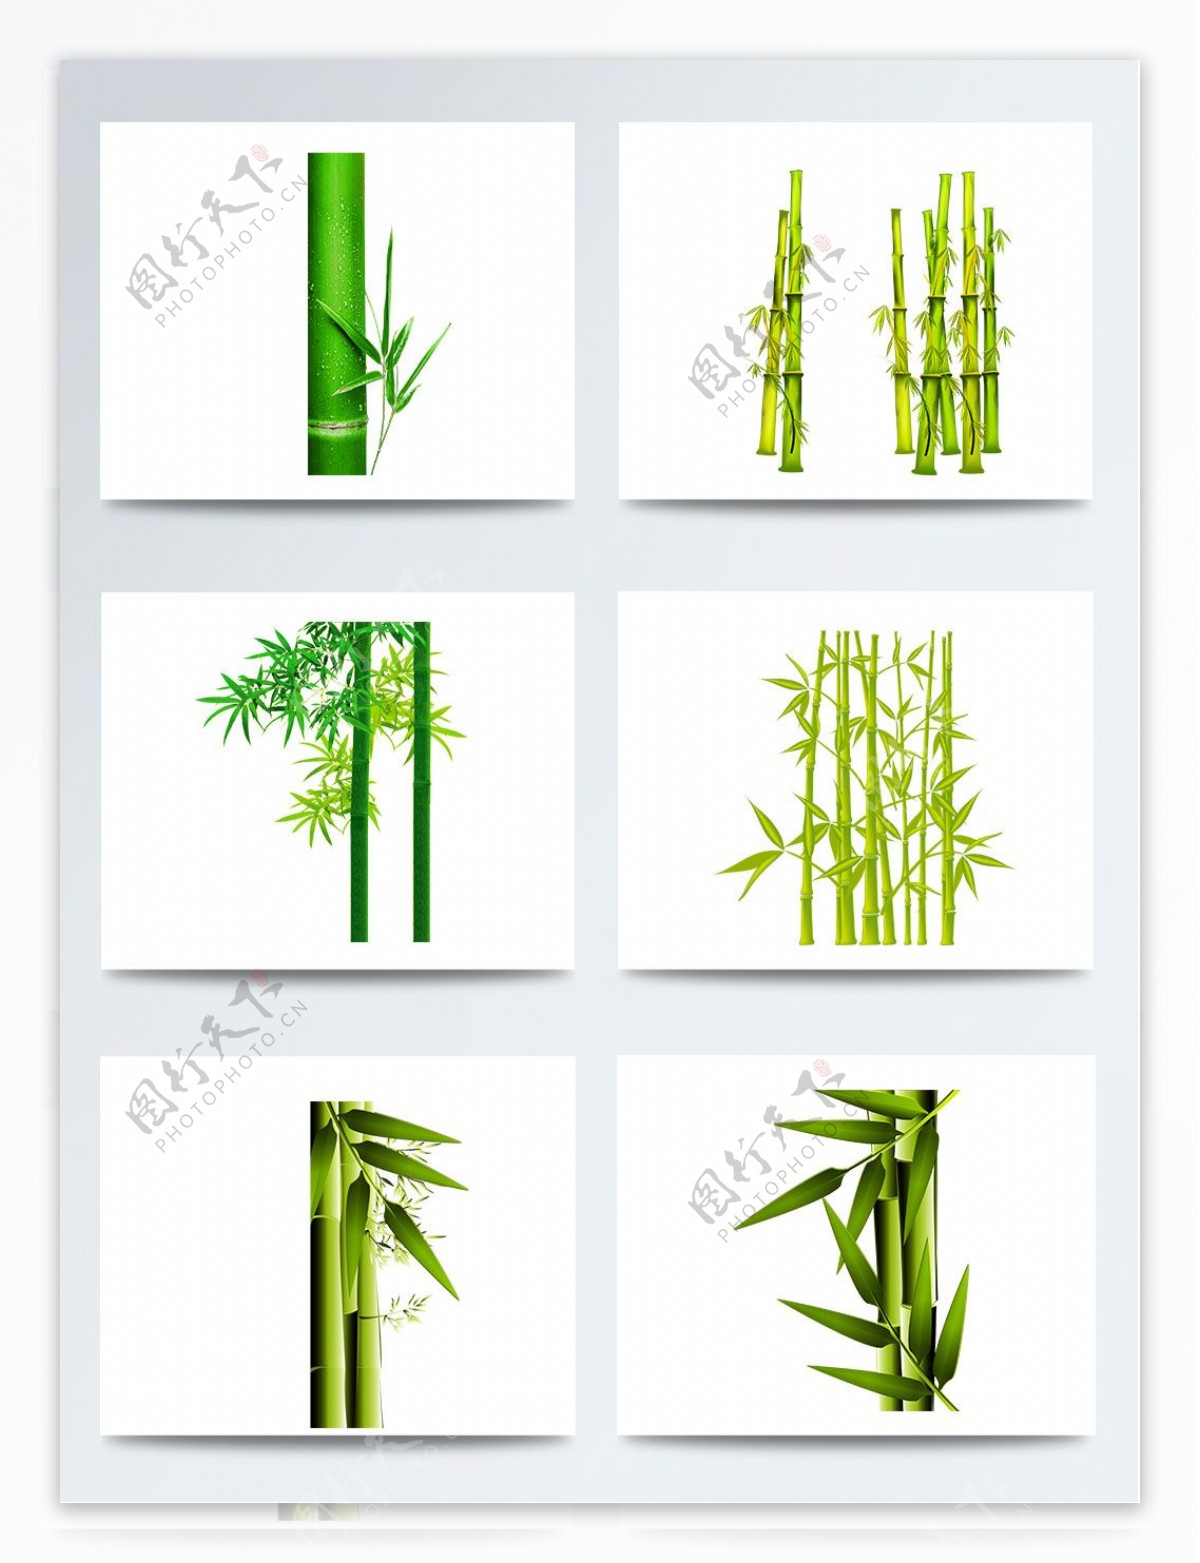 一组中国风绿色竹子素材